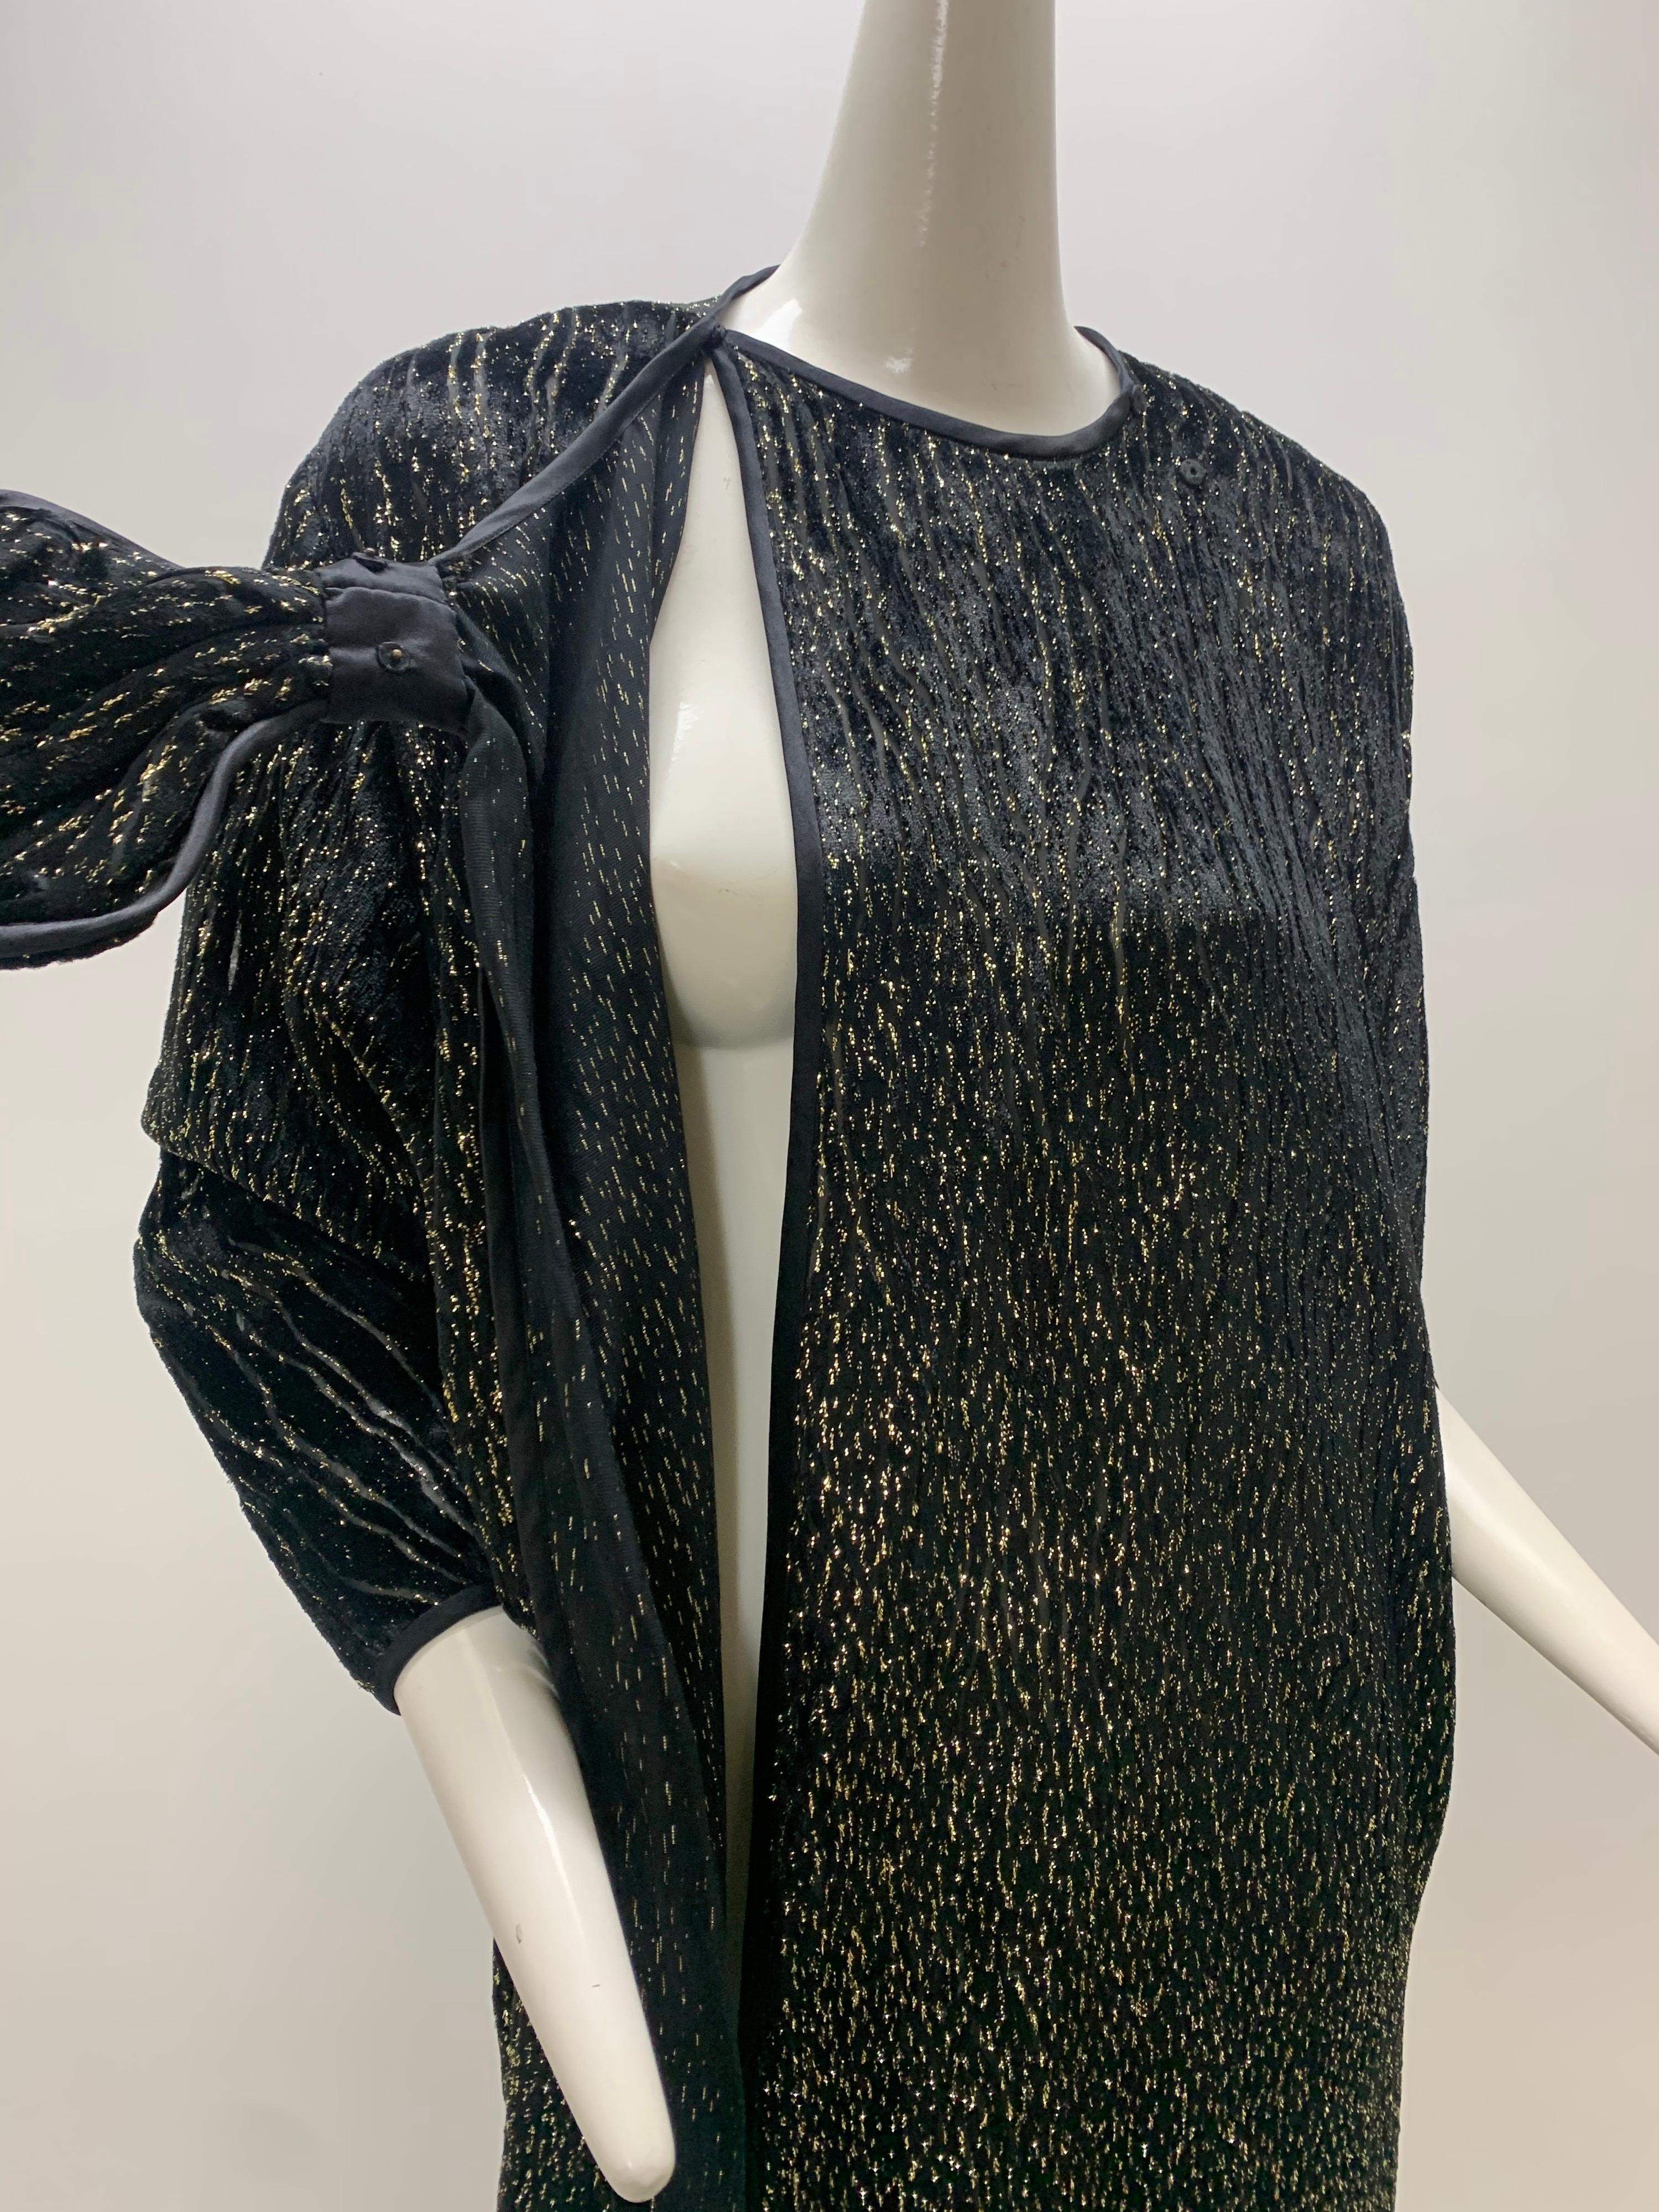 1980 Schiaparelli Black & Gold Woodgrain Velvet Side Tie Opera Coat or Dress For Sale 8